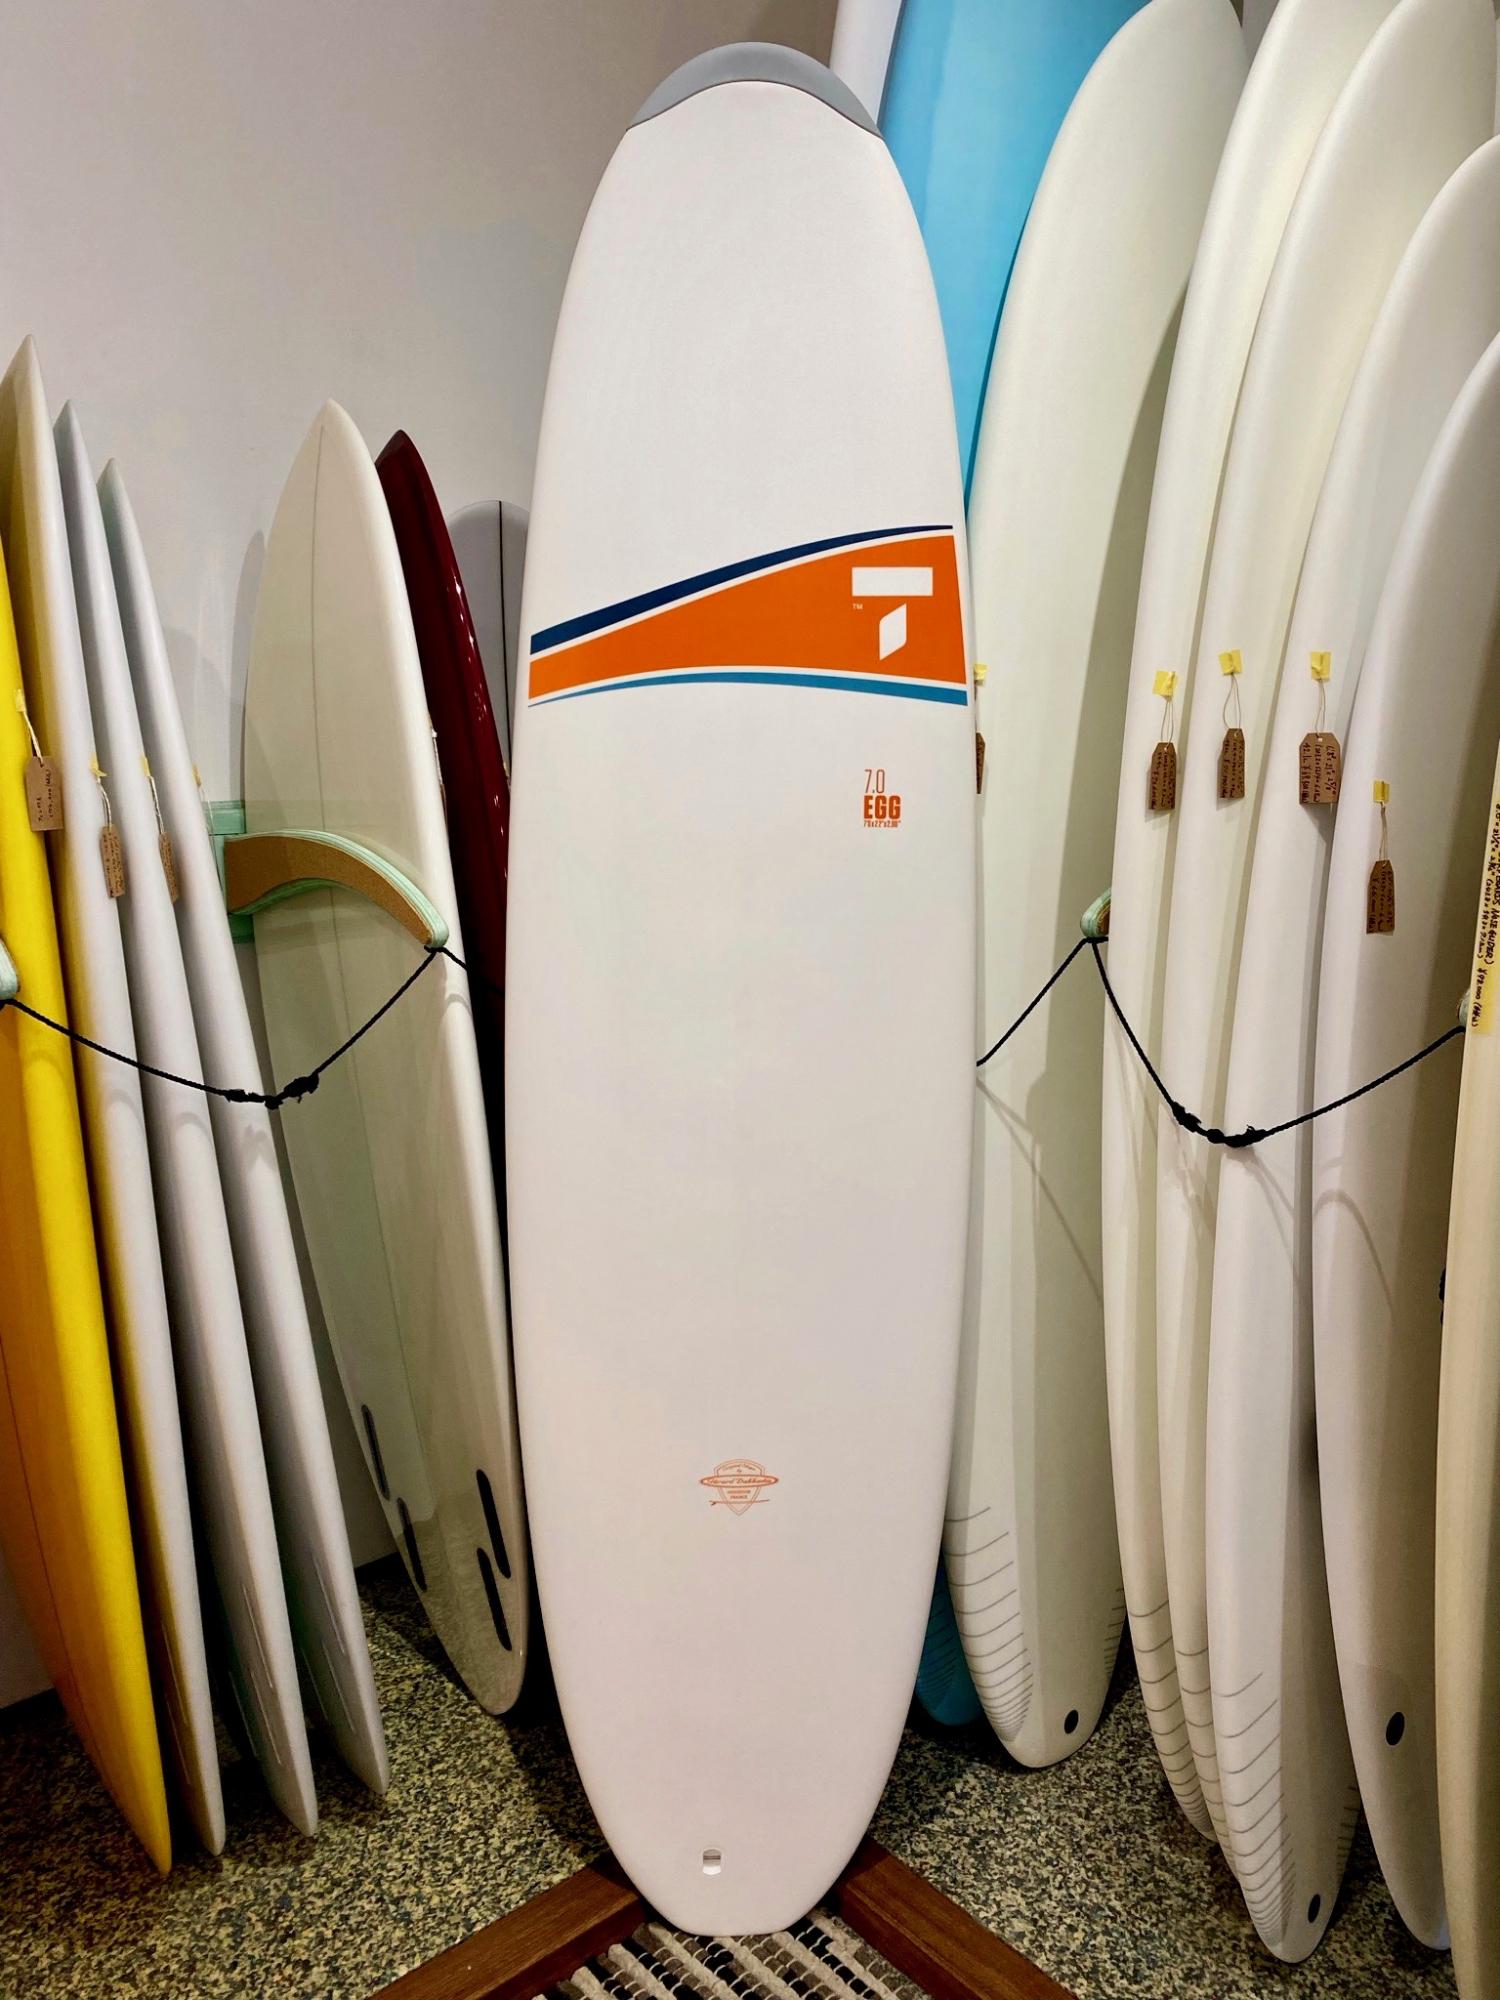 TAHE SURF BOARDS 7.0 EGG